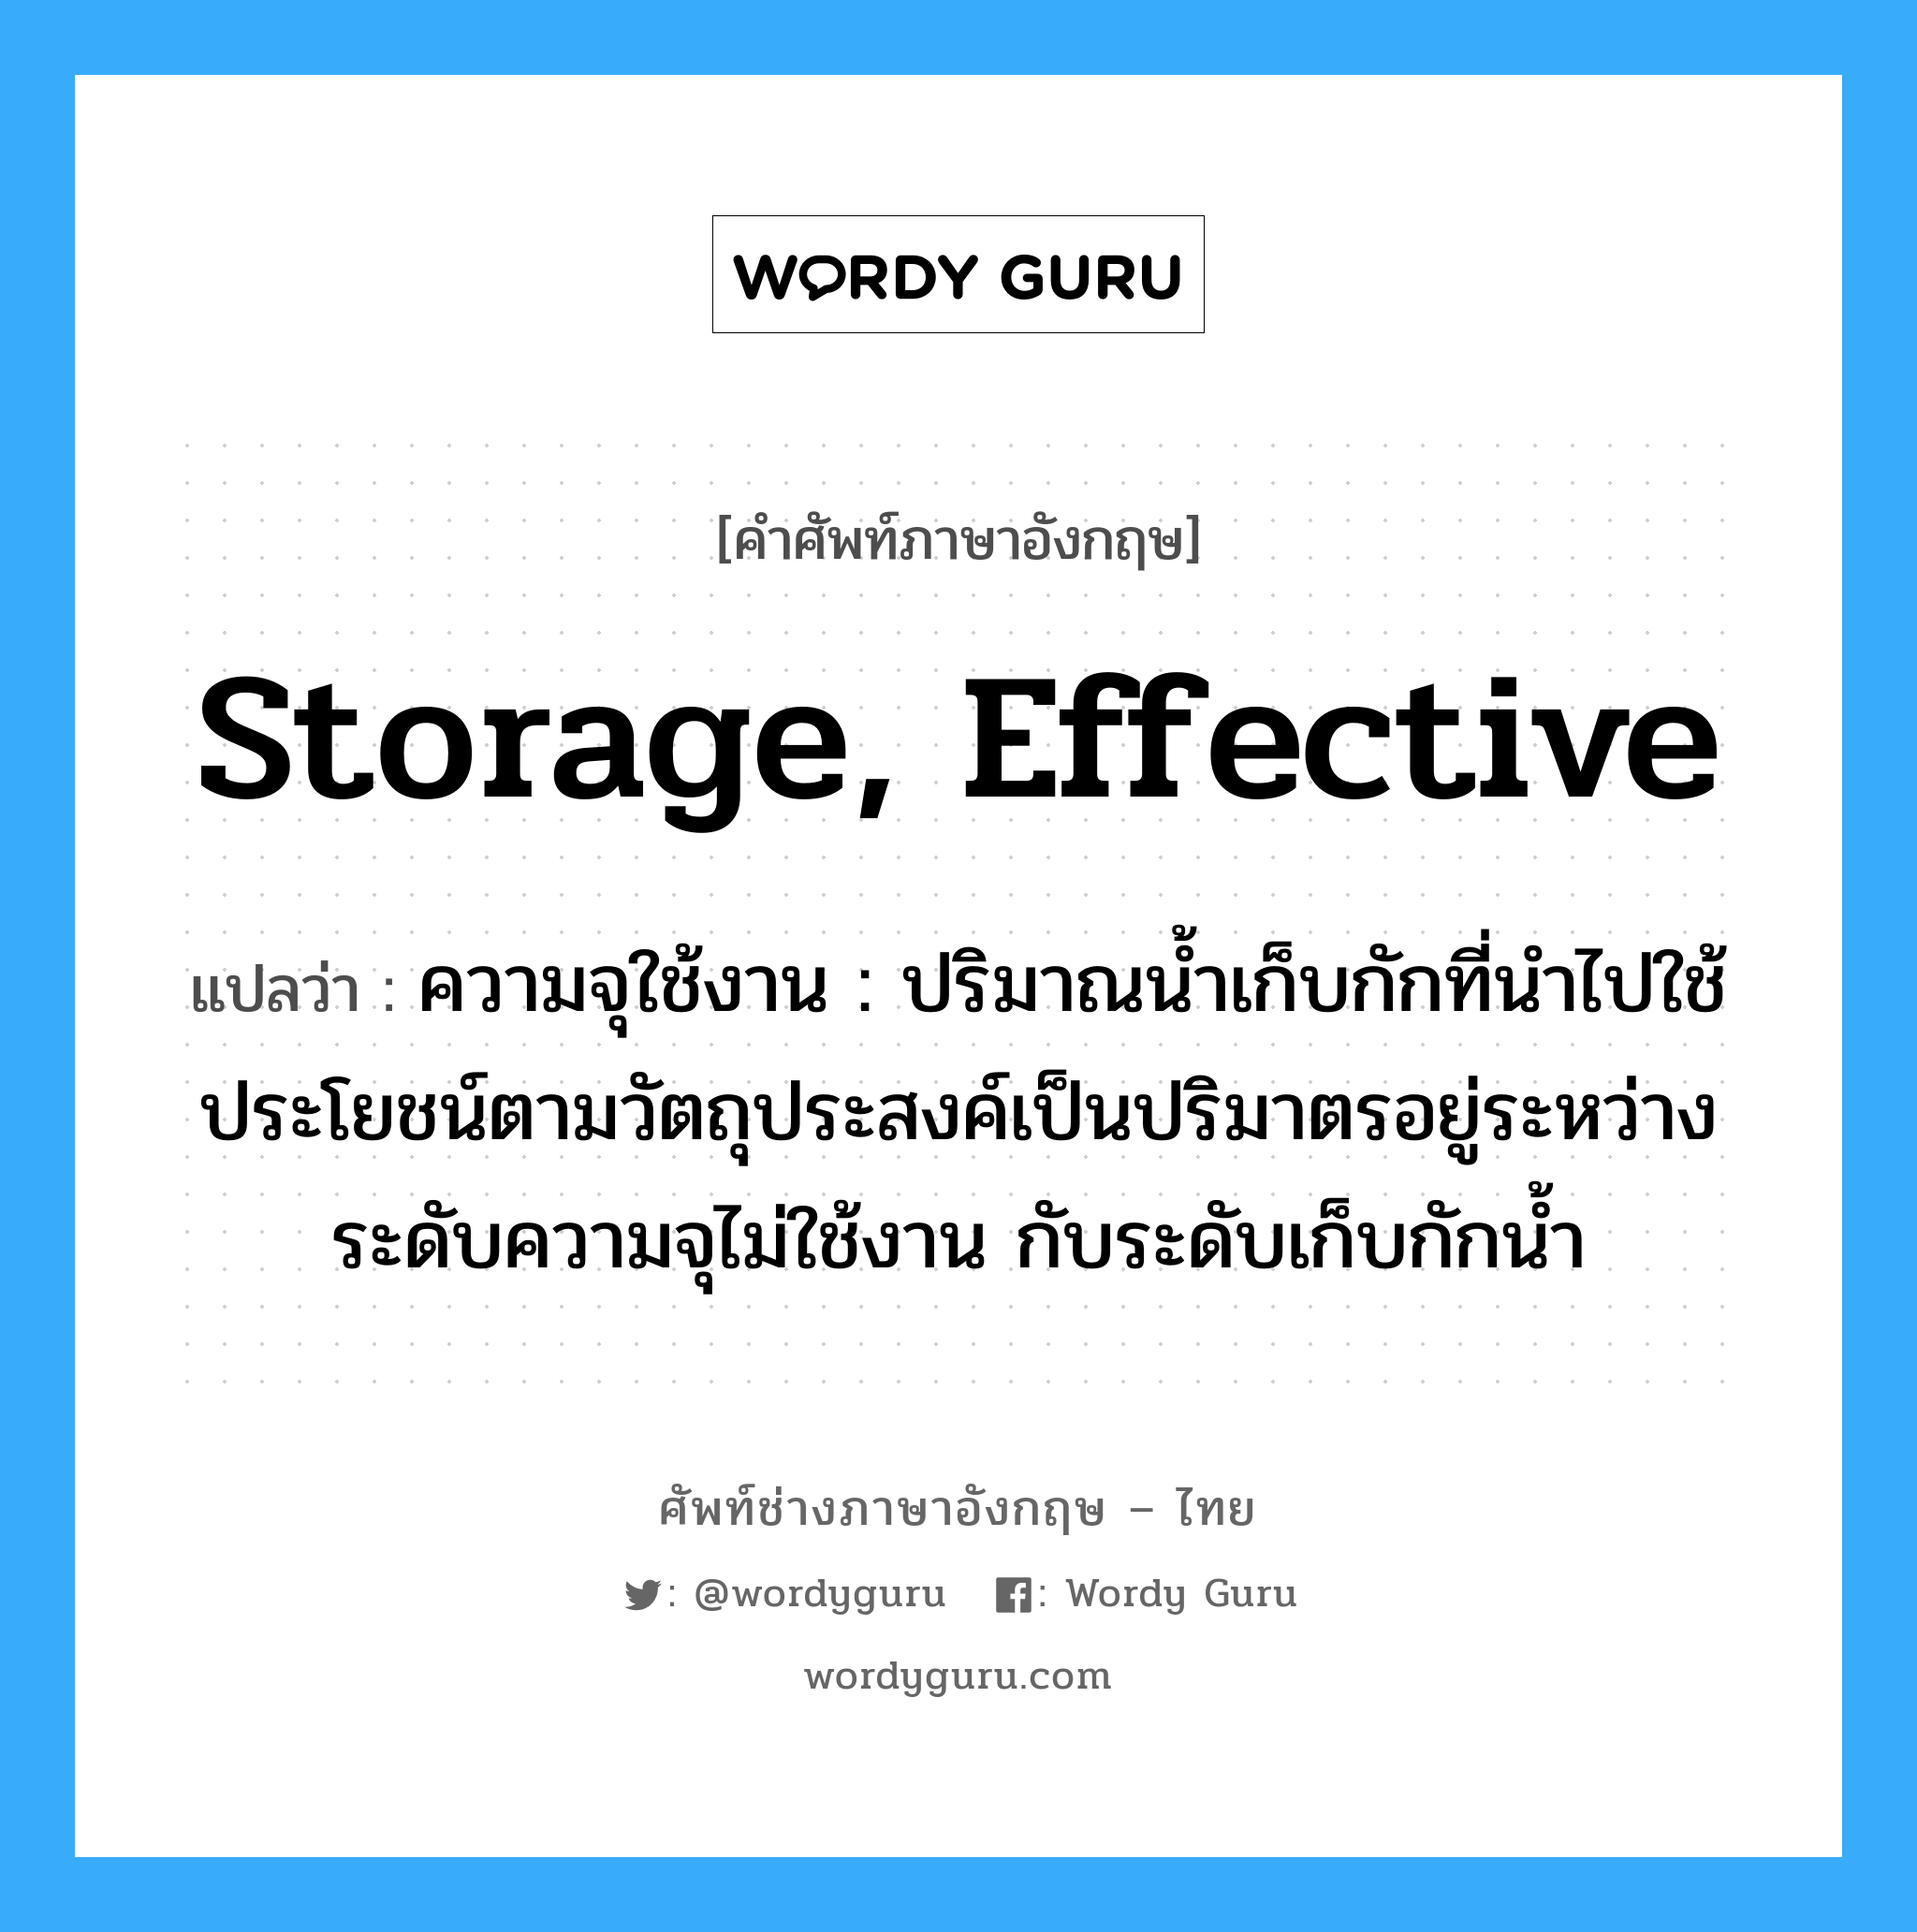 storage, effective แปลว่า?, คำศัพท์ช่างภาษาอังกฤษ - ไทย storage, effective คำศัพท์ภาษาอังกฤษ storage, effective แปลว่า ความจุใช้งาน : ปริมาณน้ำเก็บกักที่นำไปใช้ประโยชน์ตามวัตถุประสงค์เป็นปริมาตรอยู่ระหว่าง ระดับความจุไม่ใช้งาน กับระดับเก็บกักน้ำ